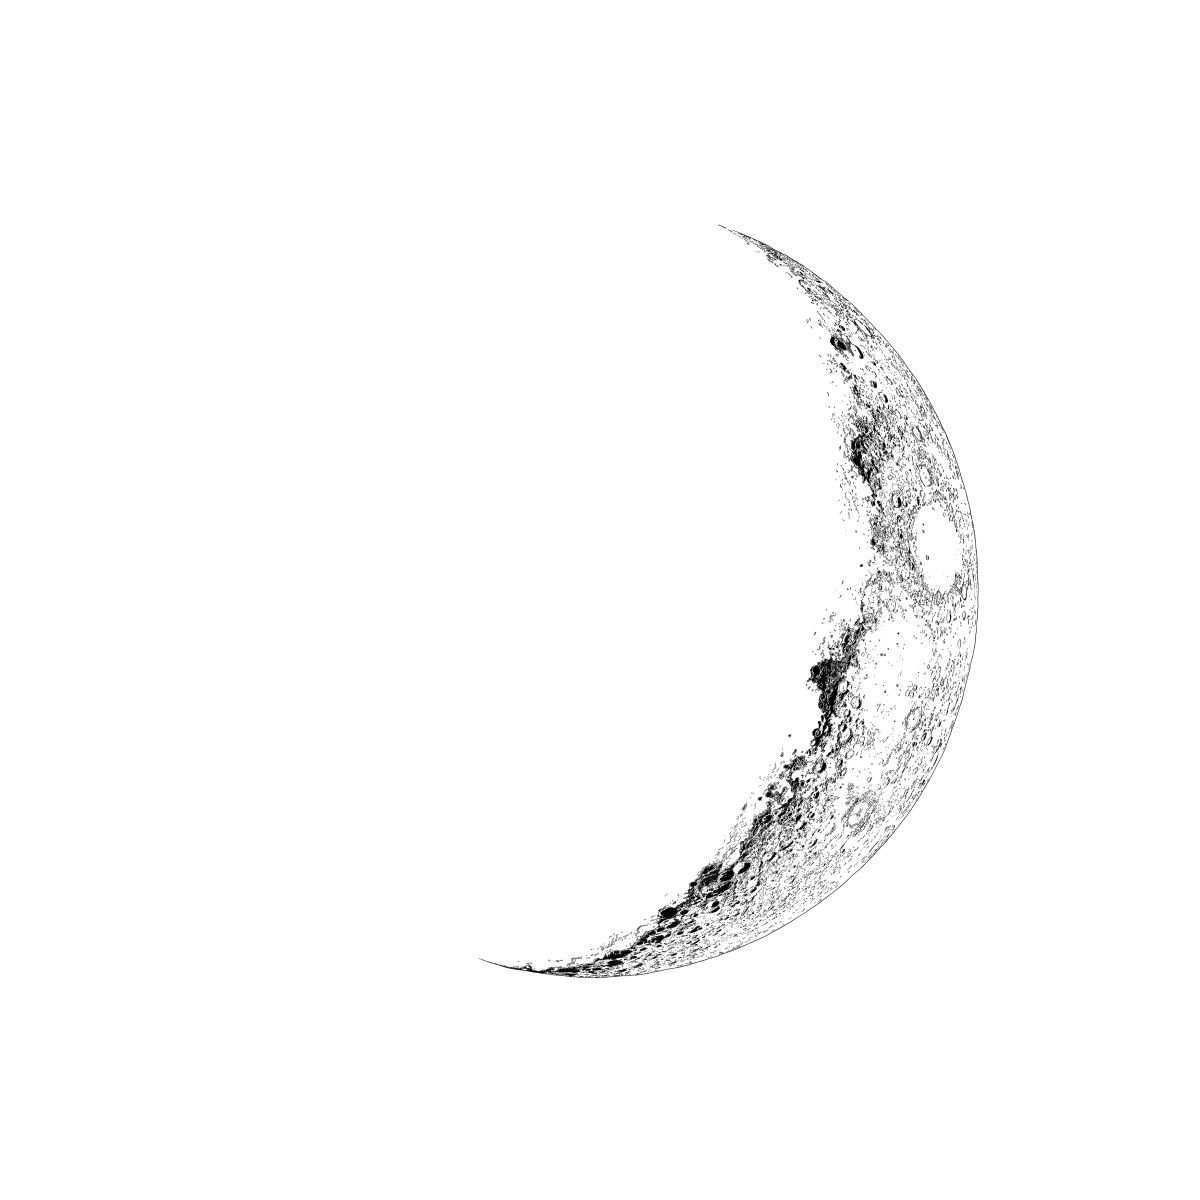 Crescent Moon by Bob Cooper